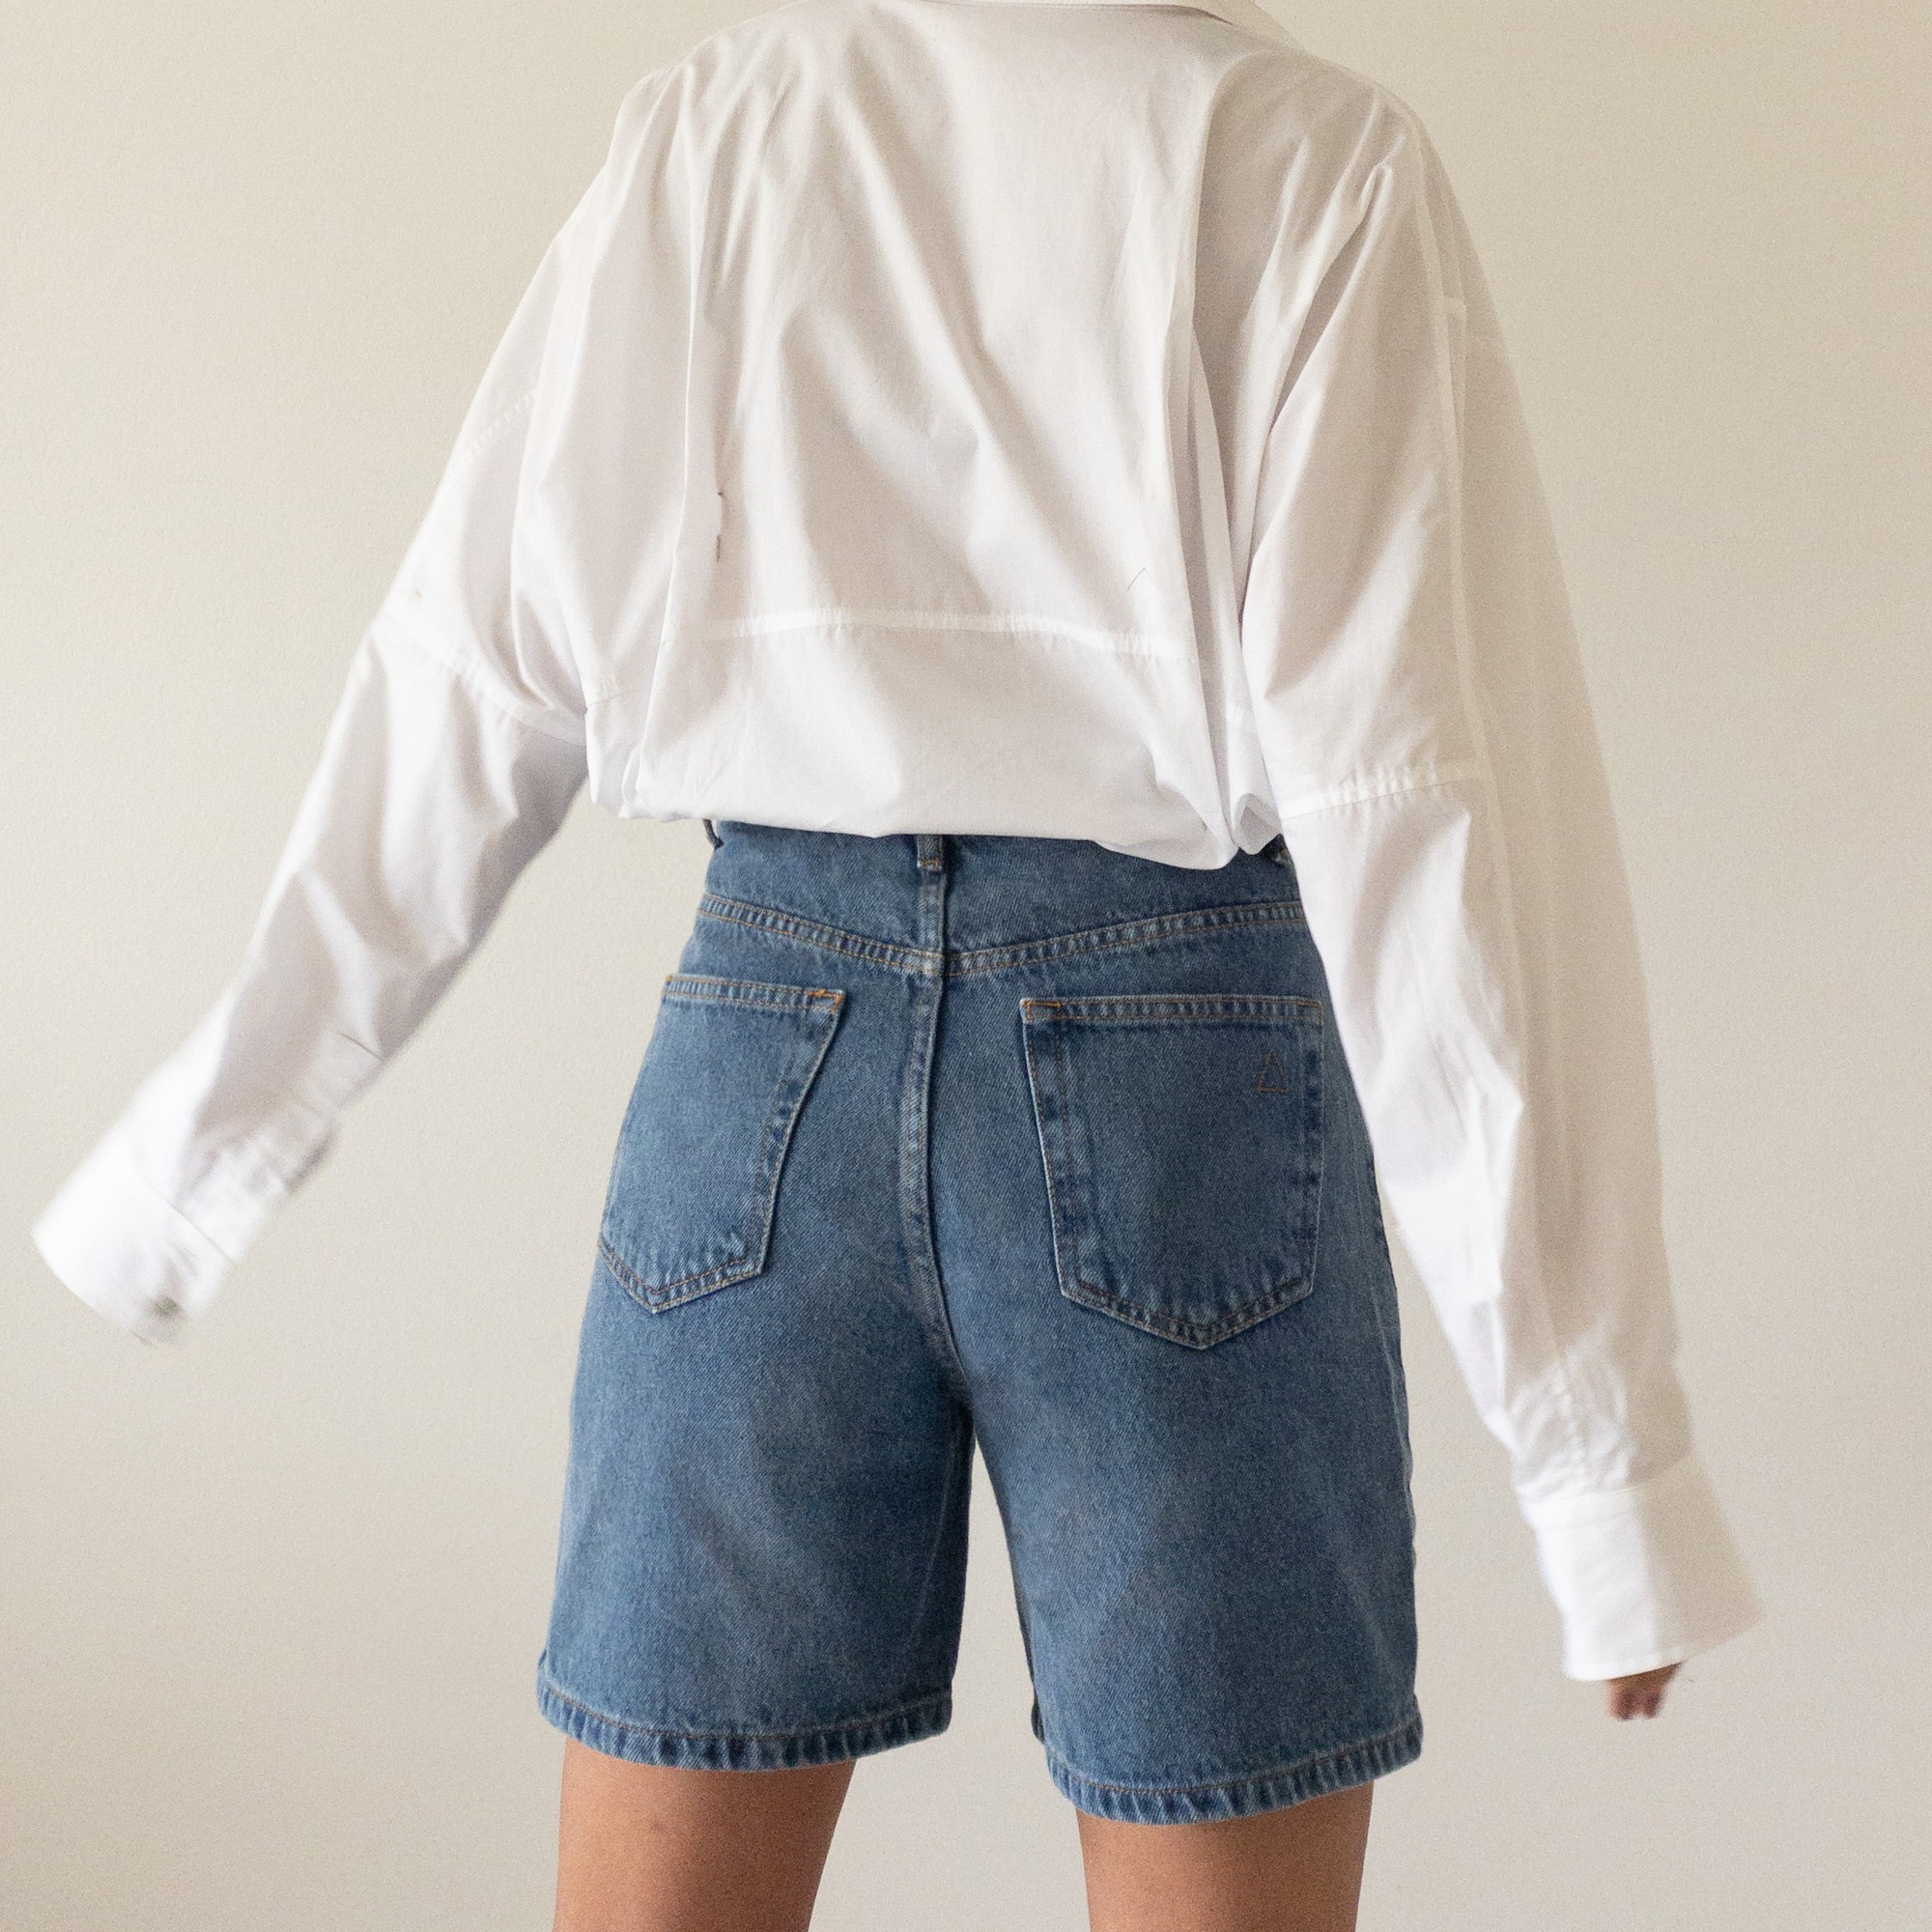 Shorts Marô | Azul Vintage